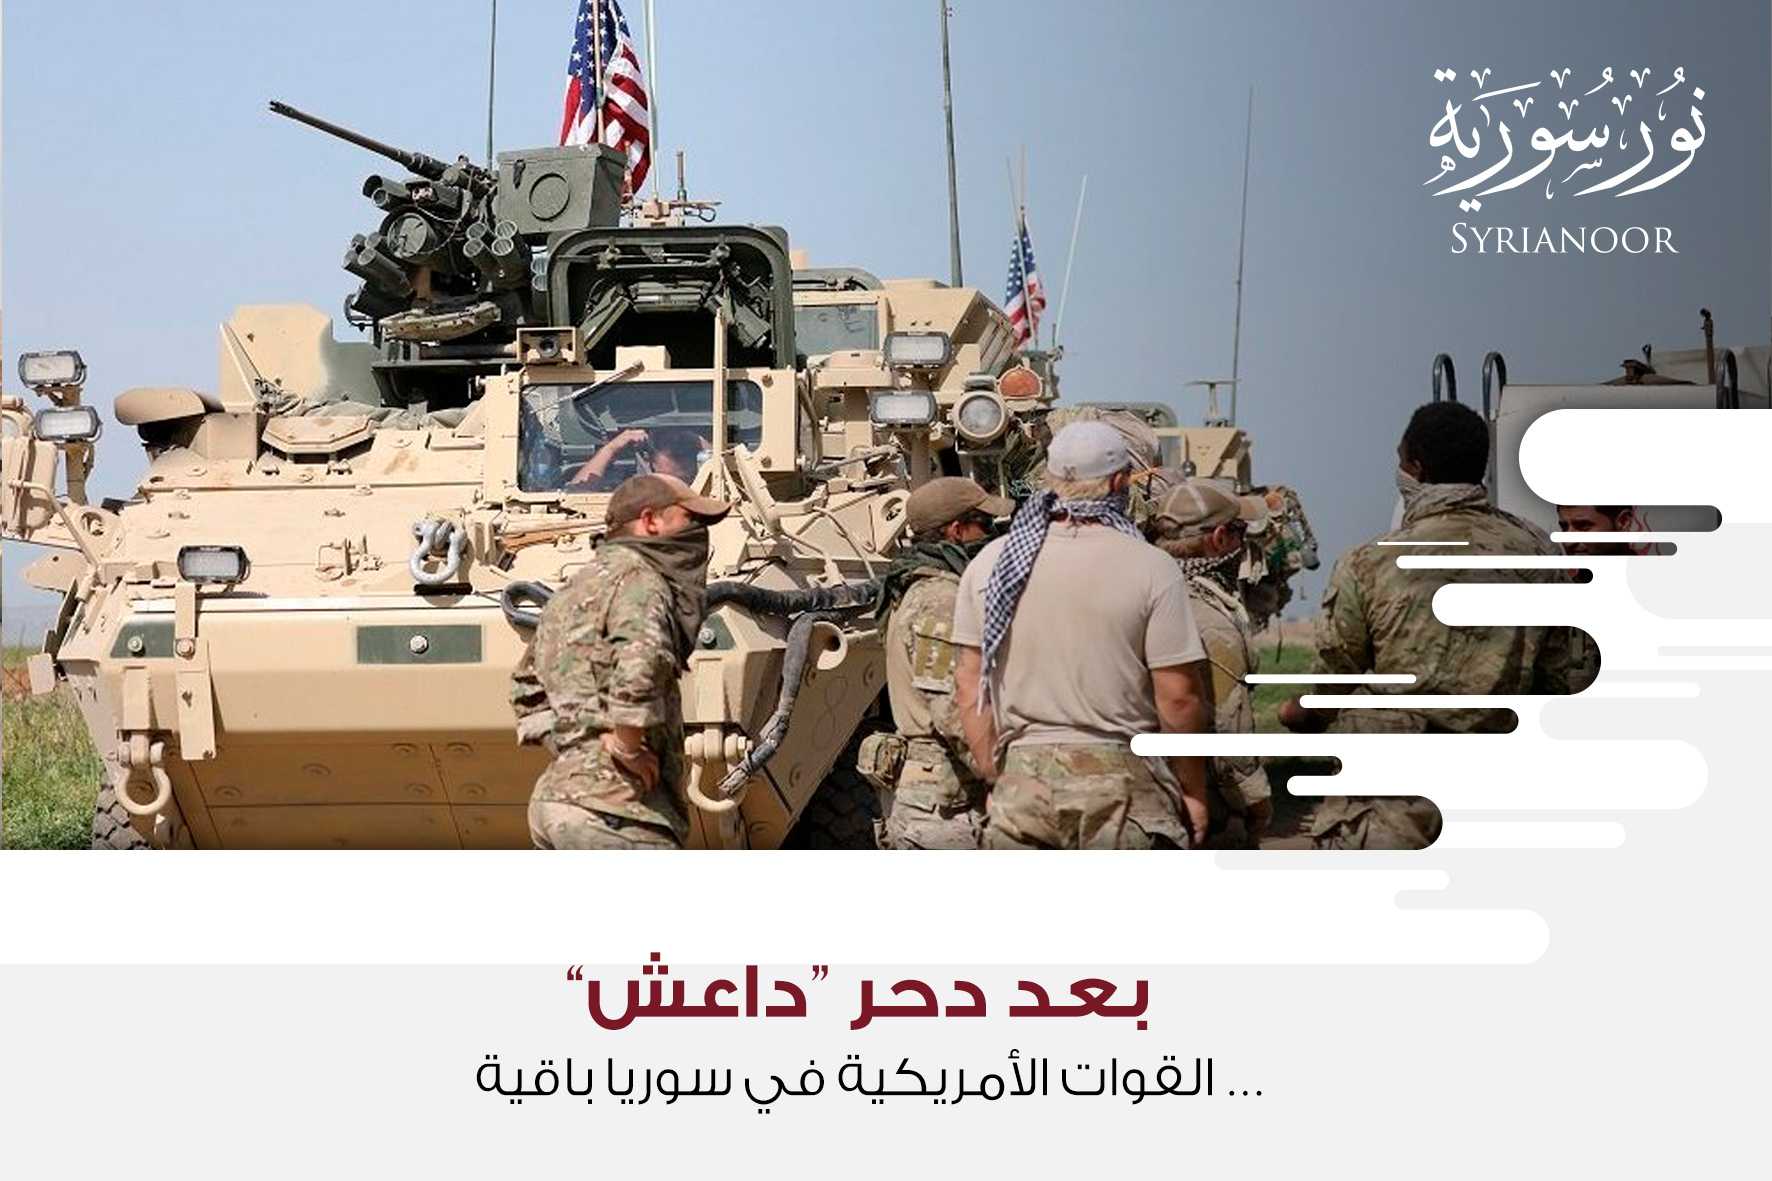 بعد دحر “داعش”… القوات الأمريكية في سوريا باقية